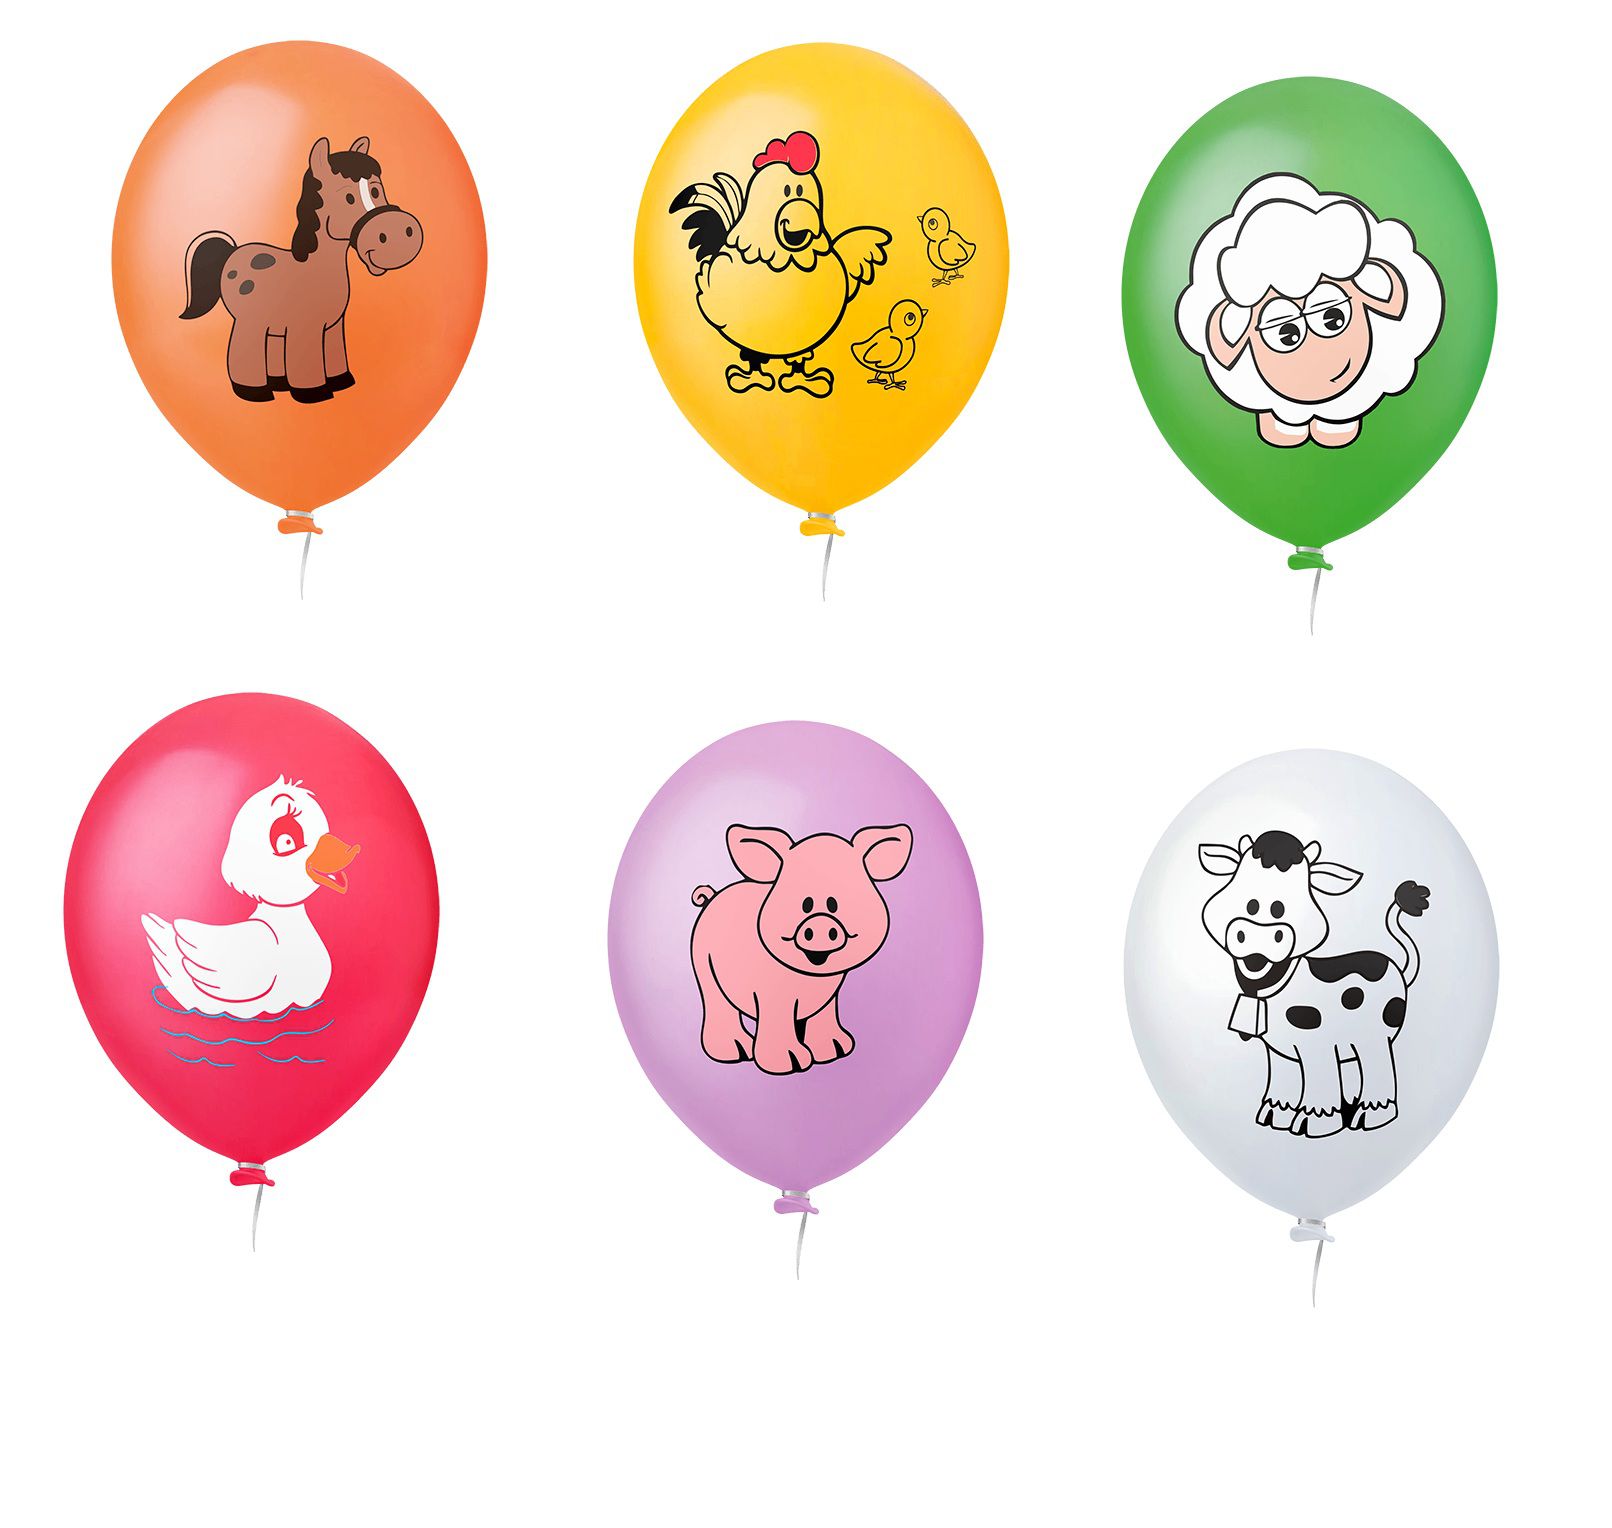 Balão - Bexiga Flork Meme - Bentô Aniversário - 25 Unidades